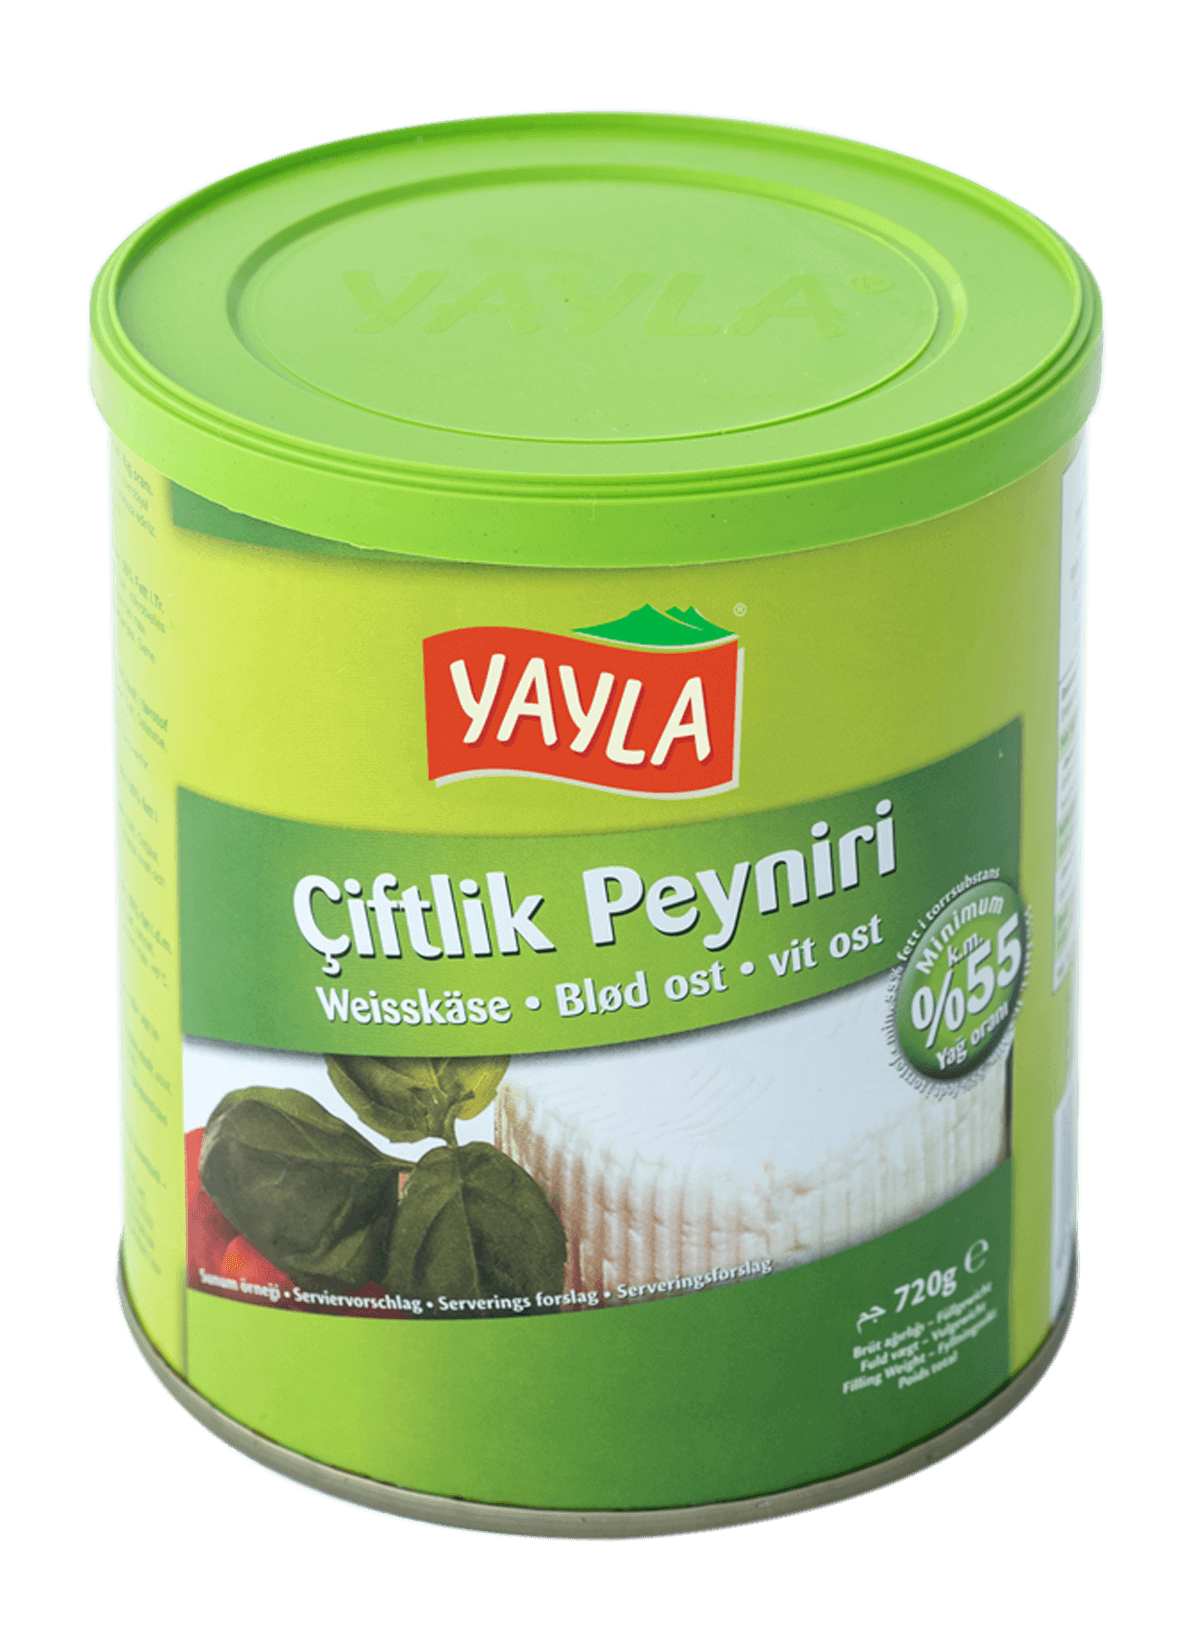 Yayla Ciftlik Peynir / Weißkäse 55% 720g